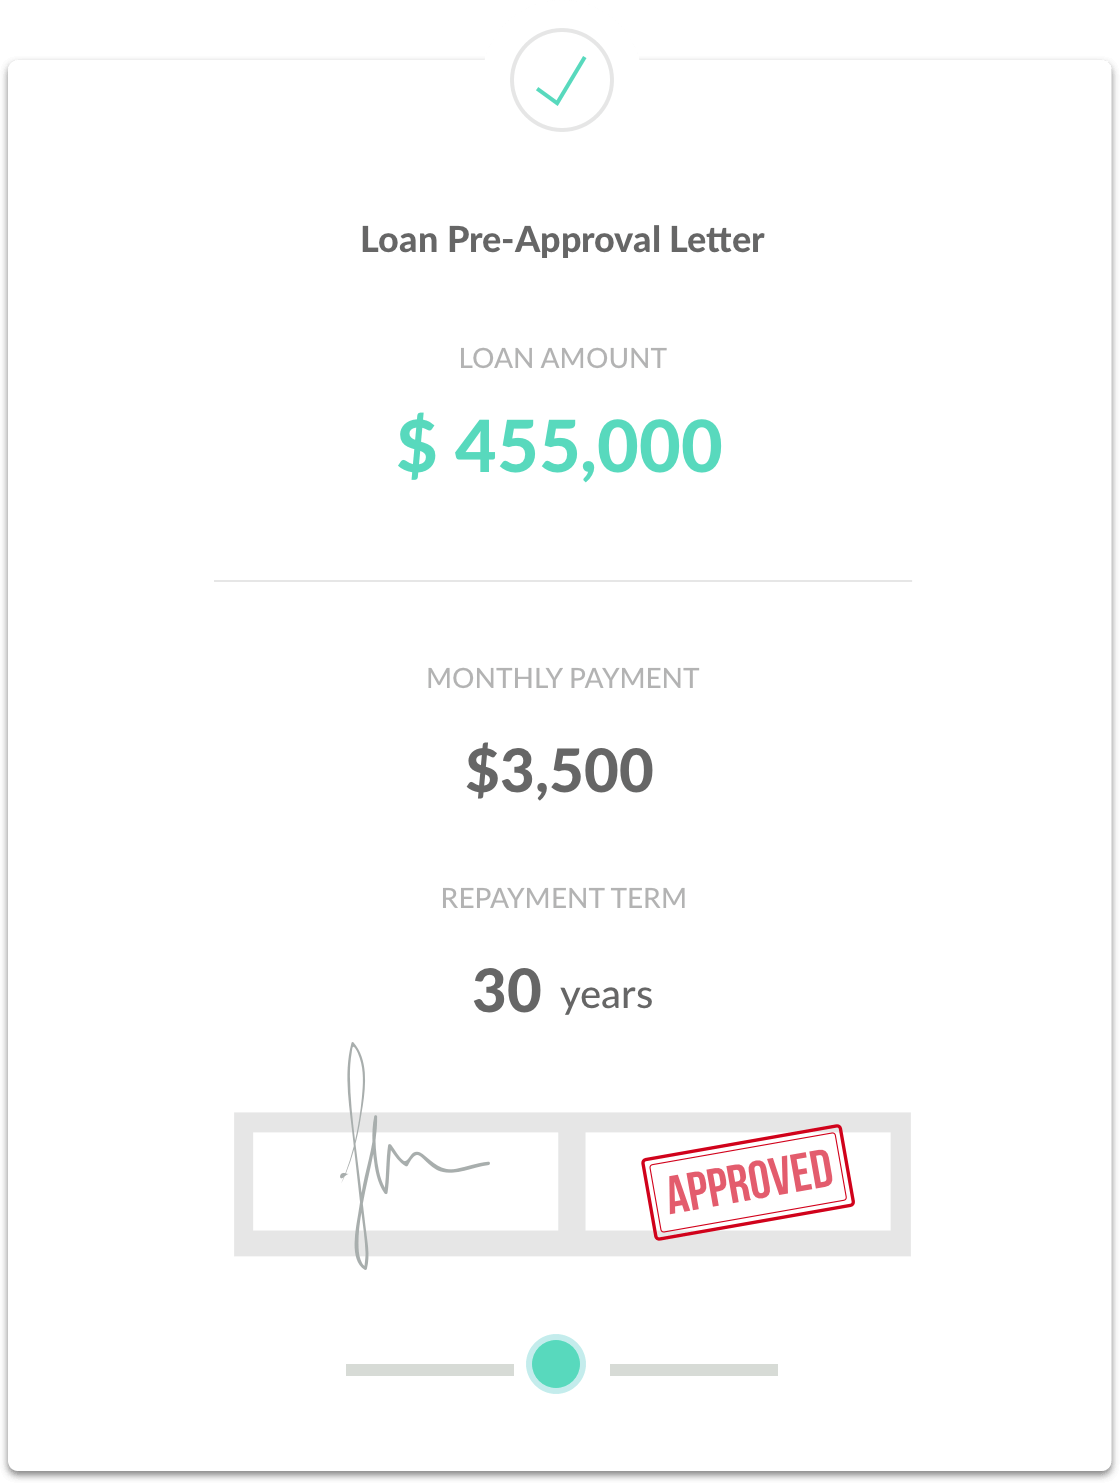 Loan Pre-Approval Letter